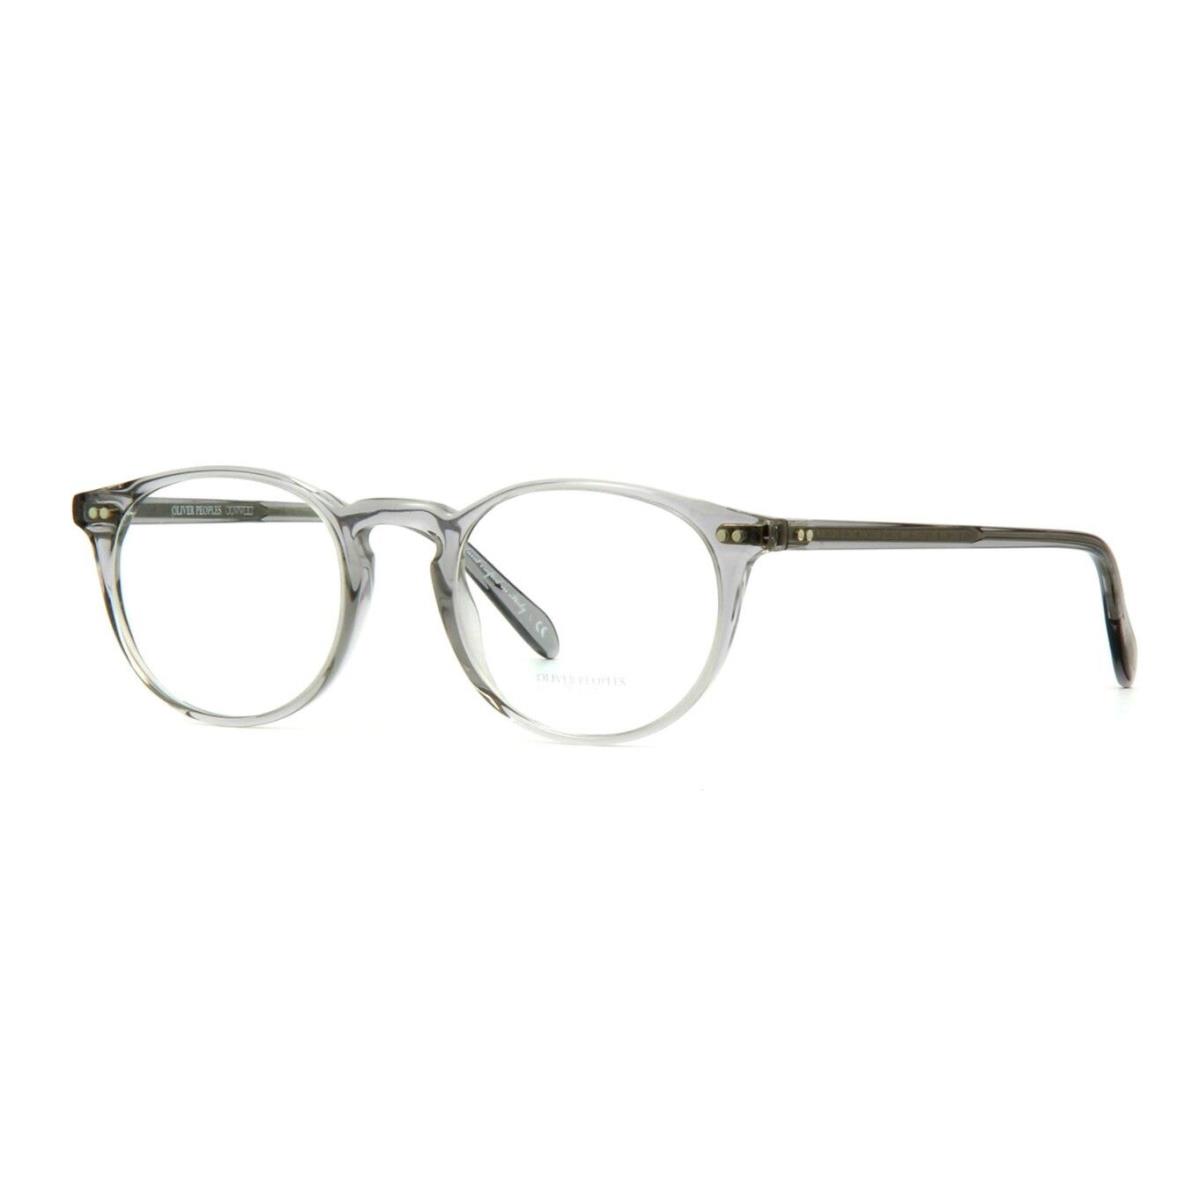 Oliver Peoples Riley-r OV 5004 Workman Grey Brushed Silver 1132 Eyeglasses - Workman Grey Brushed Silver Frame